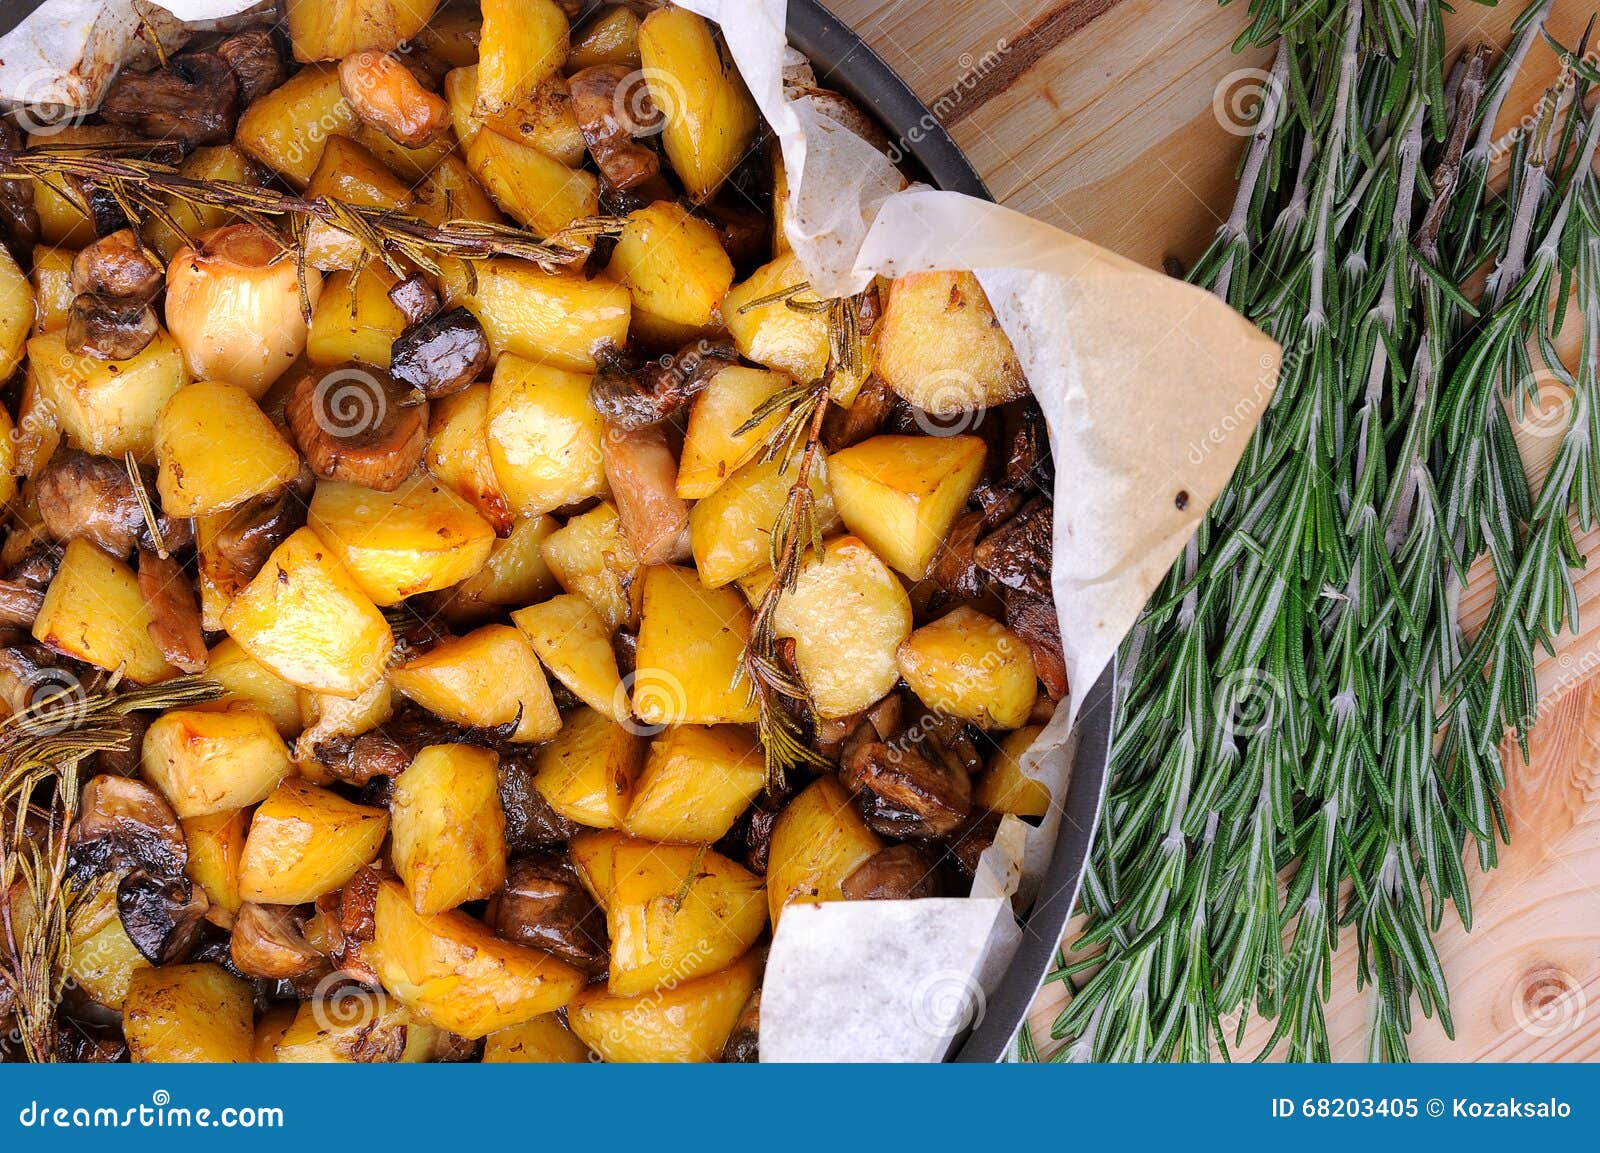 Картофель с сухими грибами. Блюда из сушеных грибов. Блюда из сушеных белых грибов. Жареная картошка с грибами. Картошка с сушеным луком.